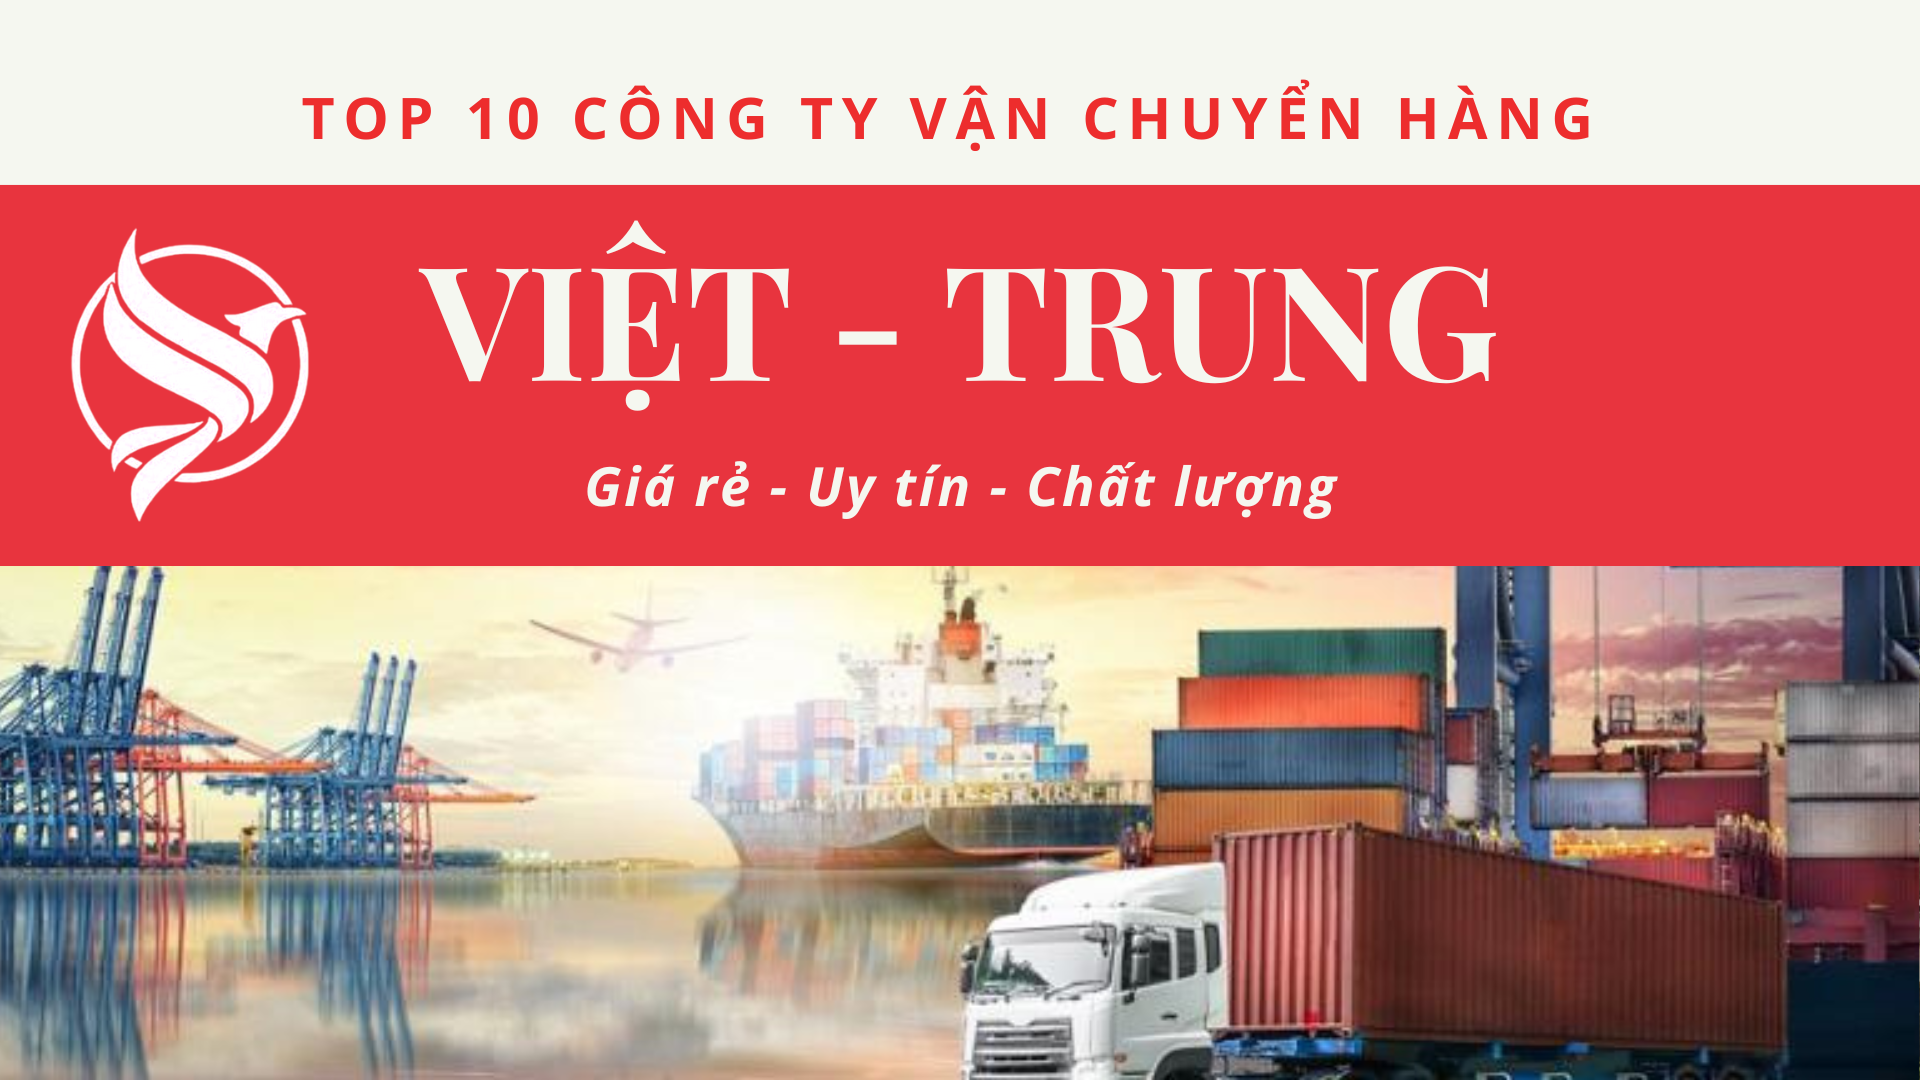 Top 10 công ty vận chuyển Việt - Trung giá rẻ